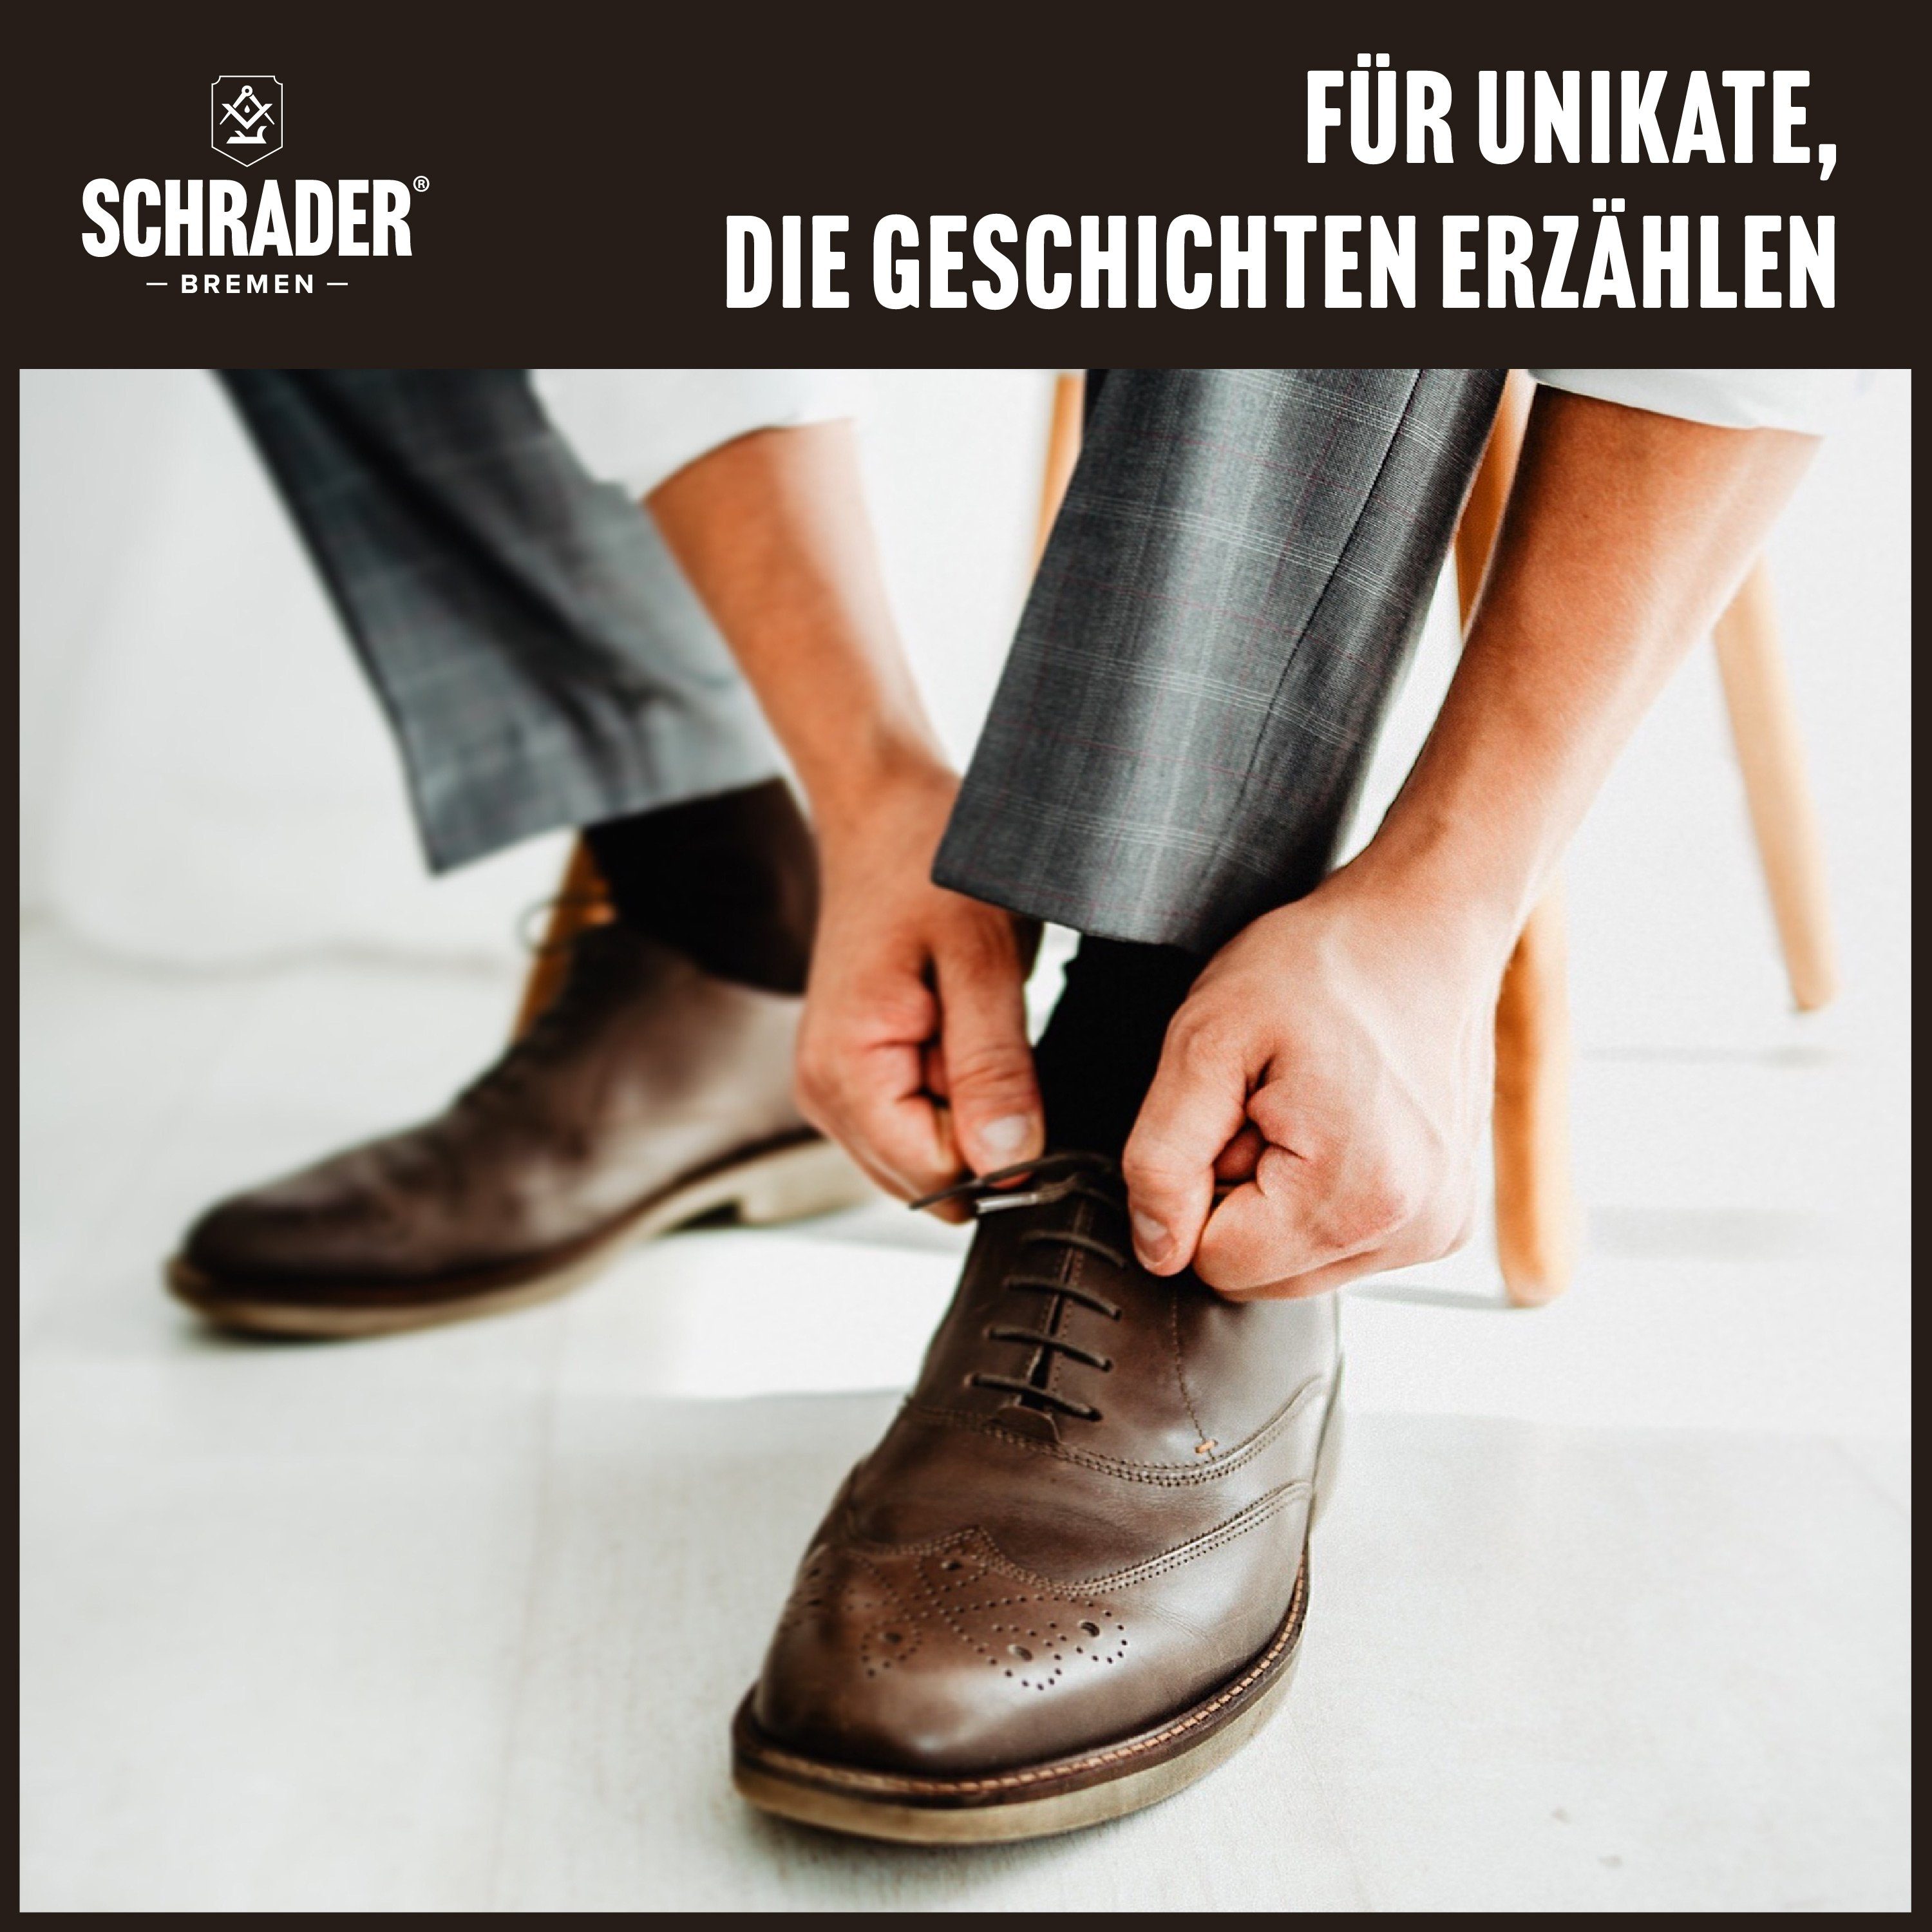 Schrader Anzugschuhe mit Lederschuhen (zur in - 4-teilig Lederpflegeset - Lederreiniger - Made Germany) Schuhpflege Pflegemitteln von 